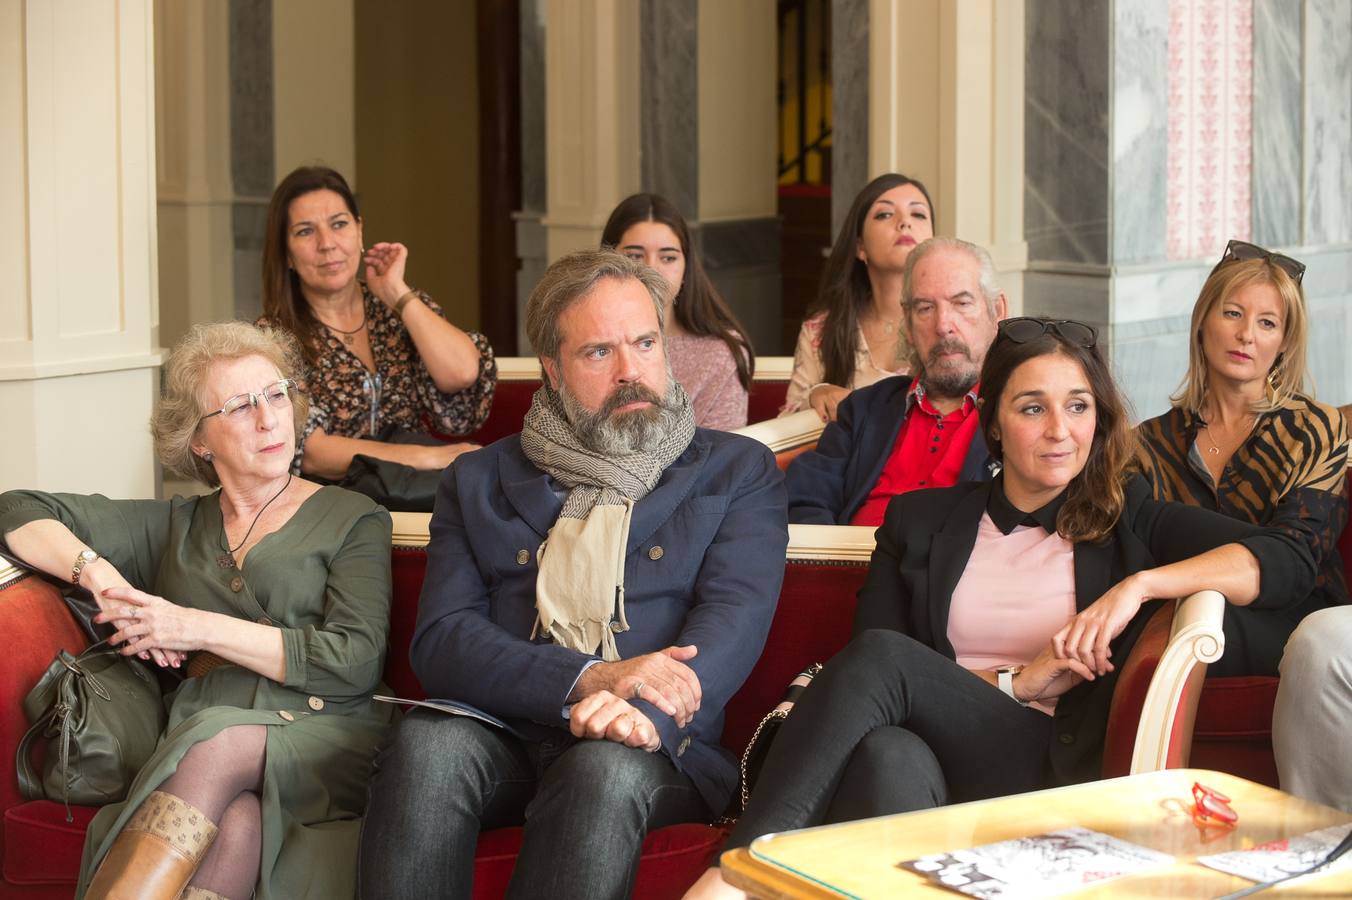 'Don Juan Tenorio', la obra inmortal de José Zorrilla, regresa un año más al escenario del Teatro Romea de Murcia con la compañía Cecilio Pineda.